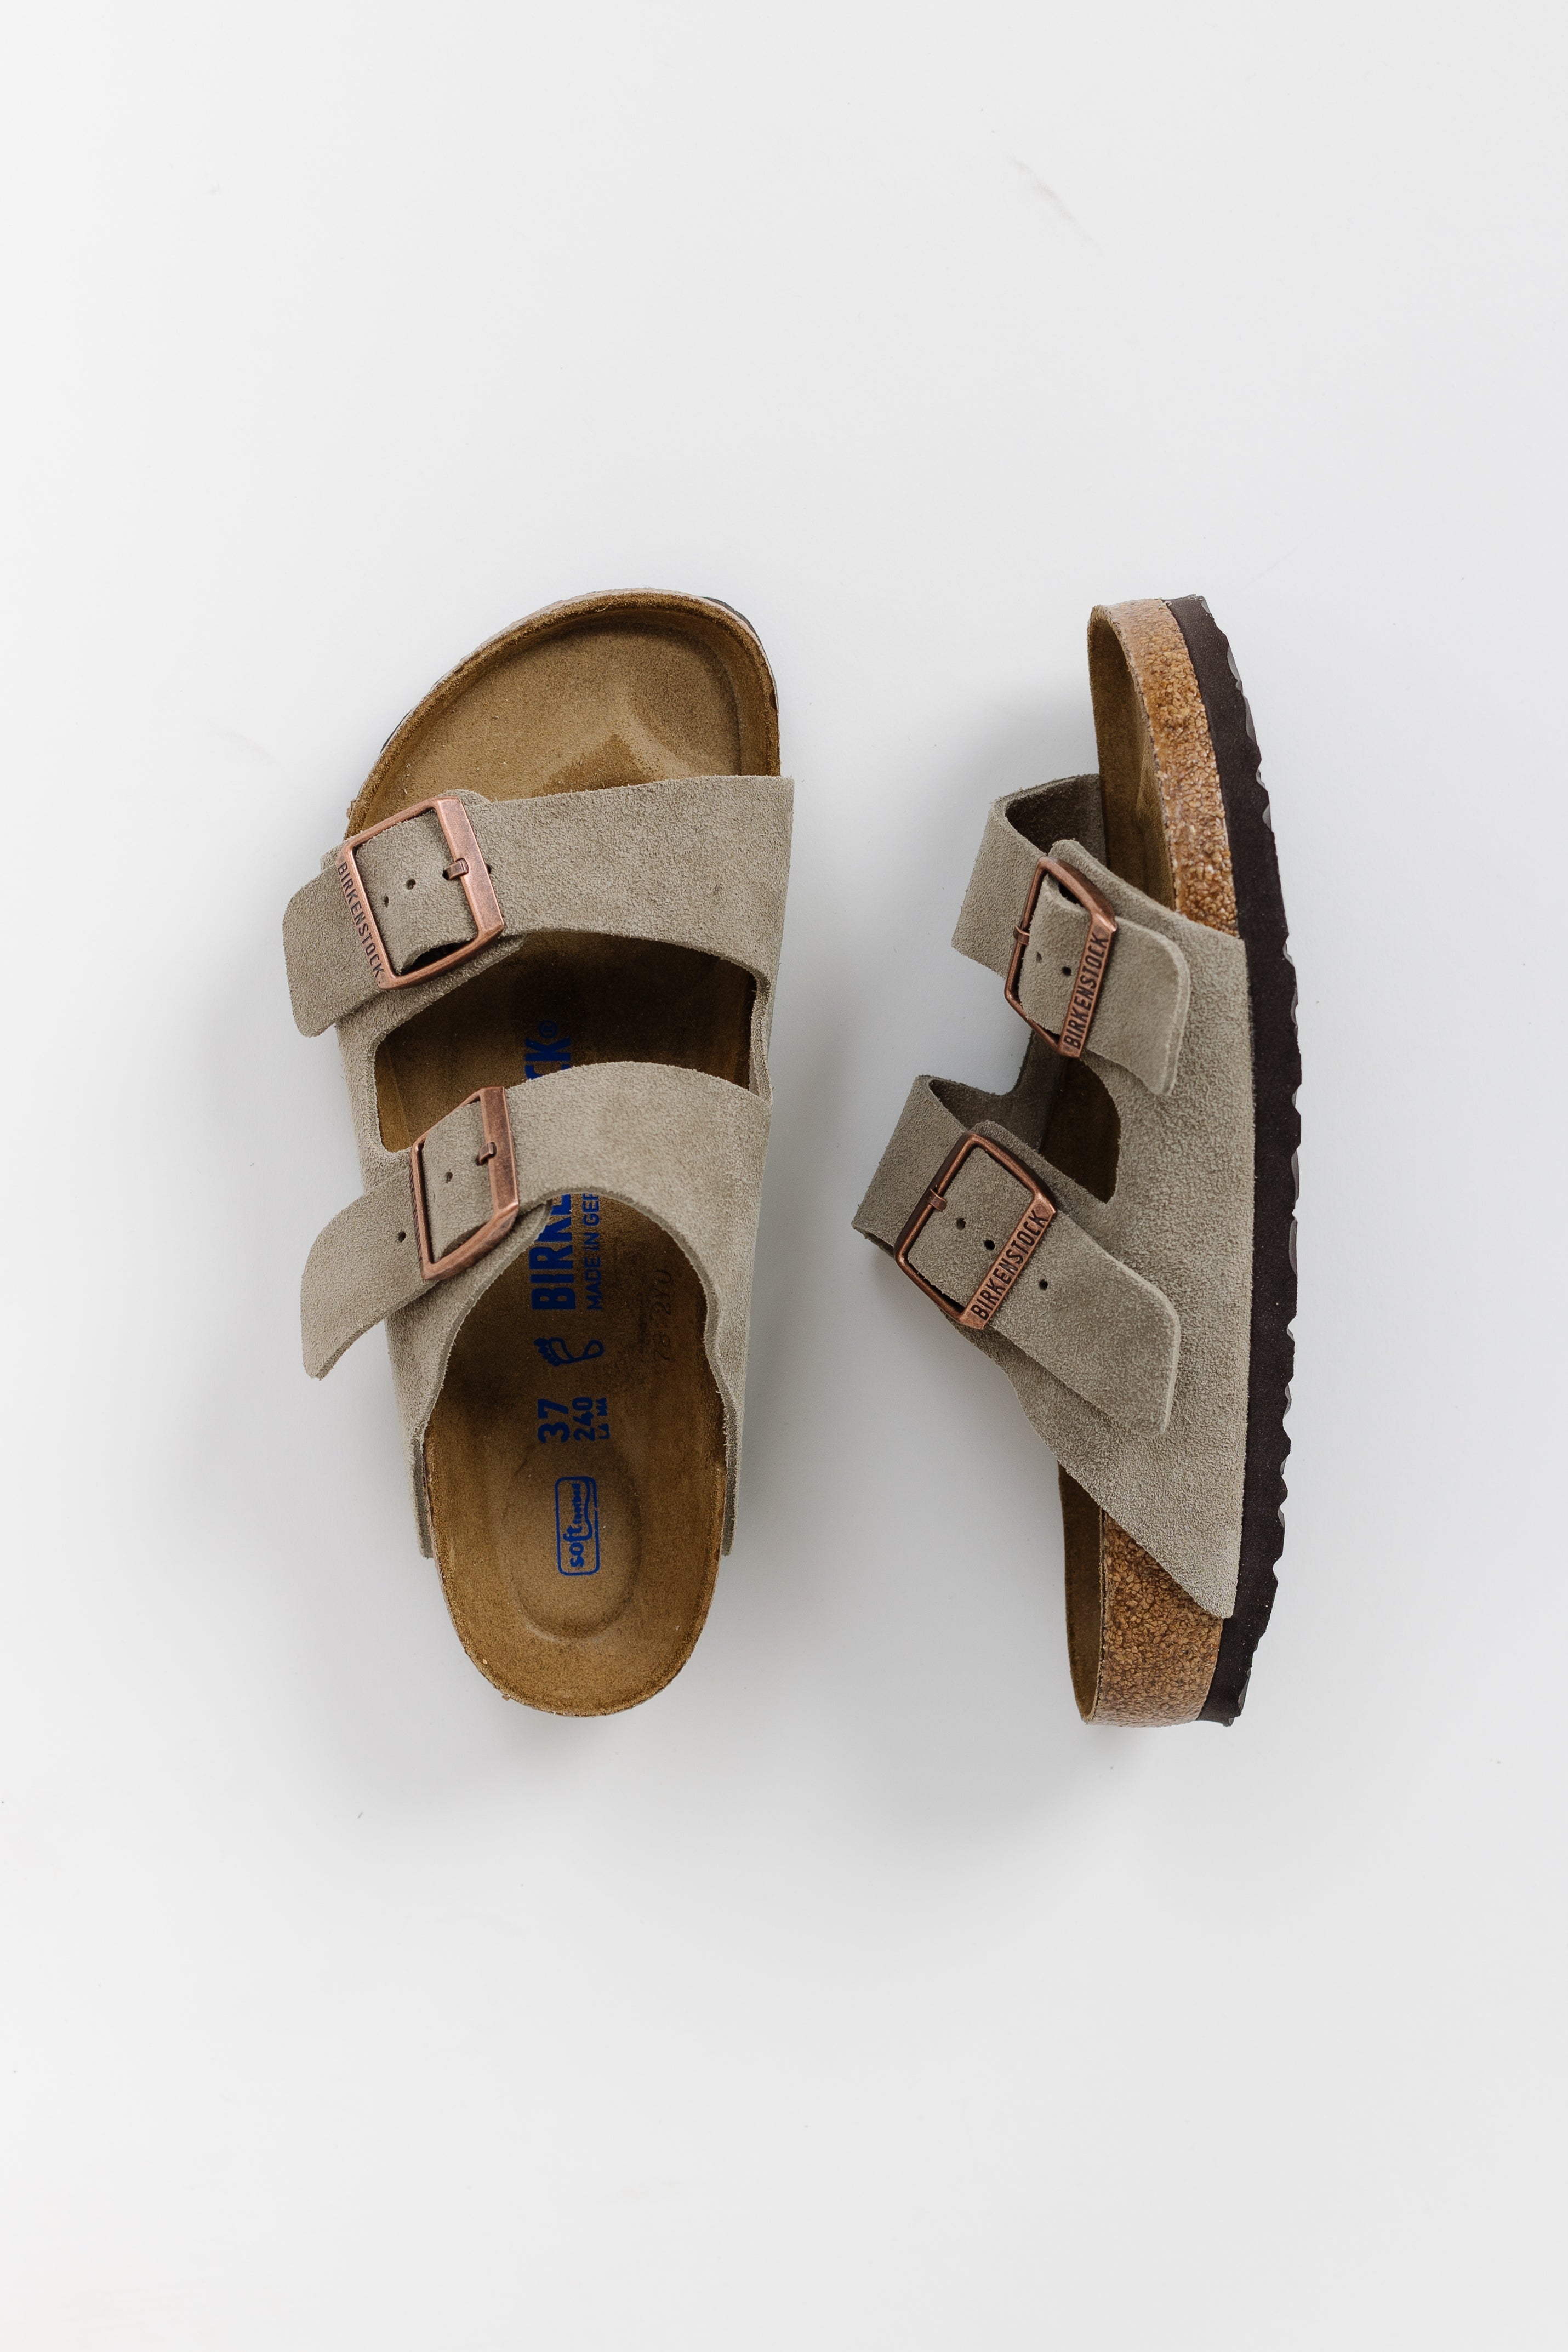 Birkenstock Arizona Soft Footbed Taupe Suede Sandal (Regular